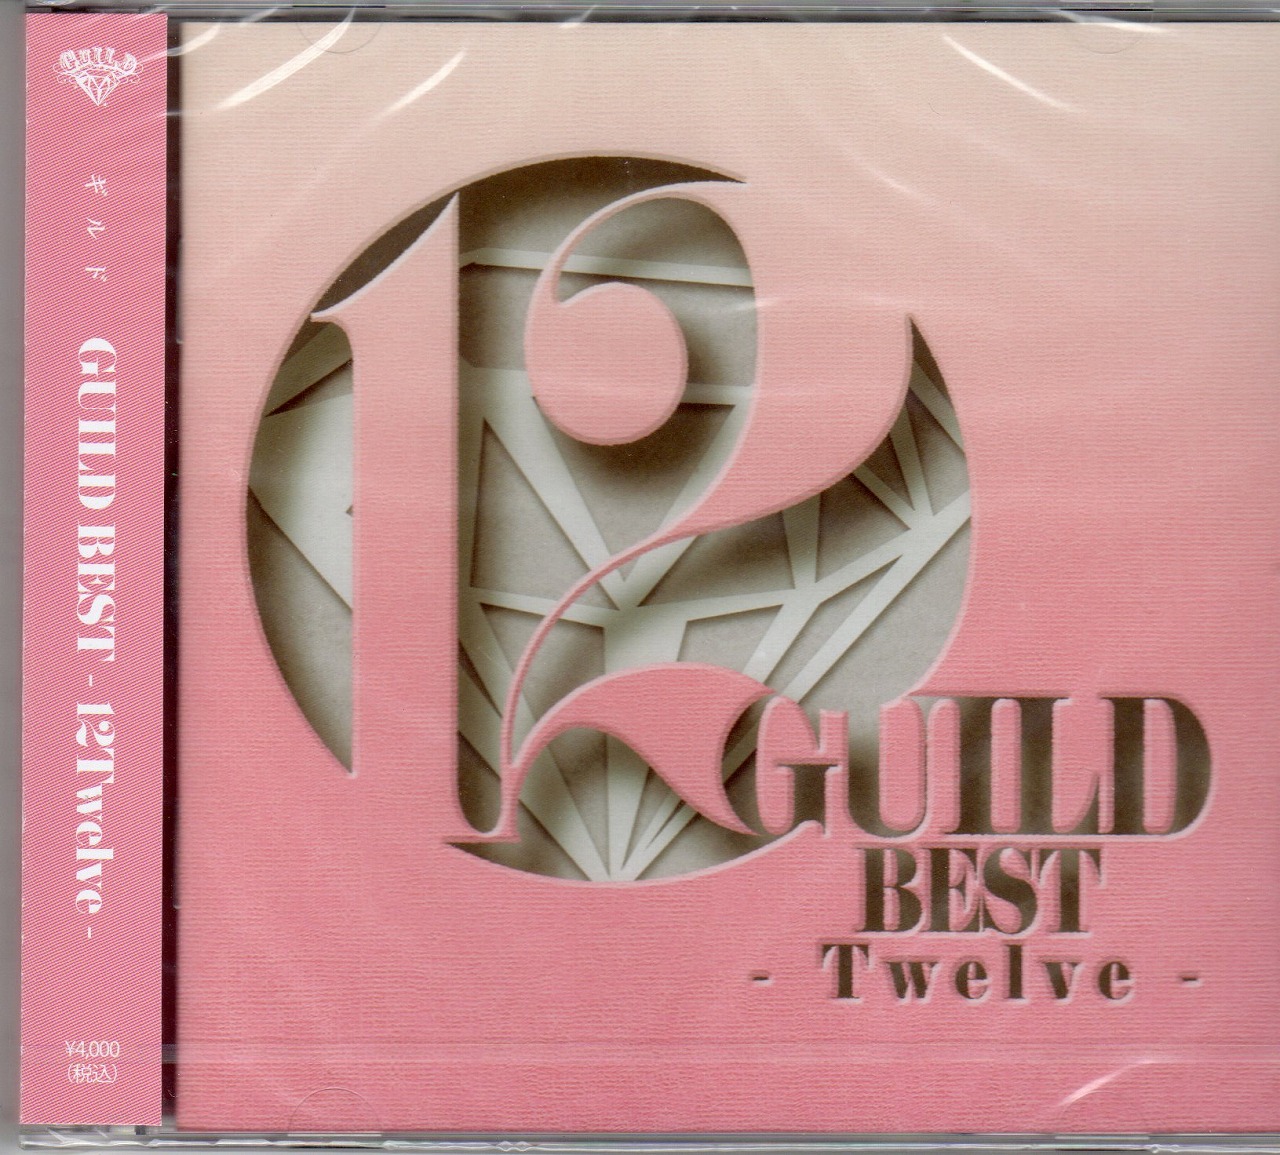 ギルド の CD GUILD BEST -12Twelve-